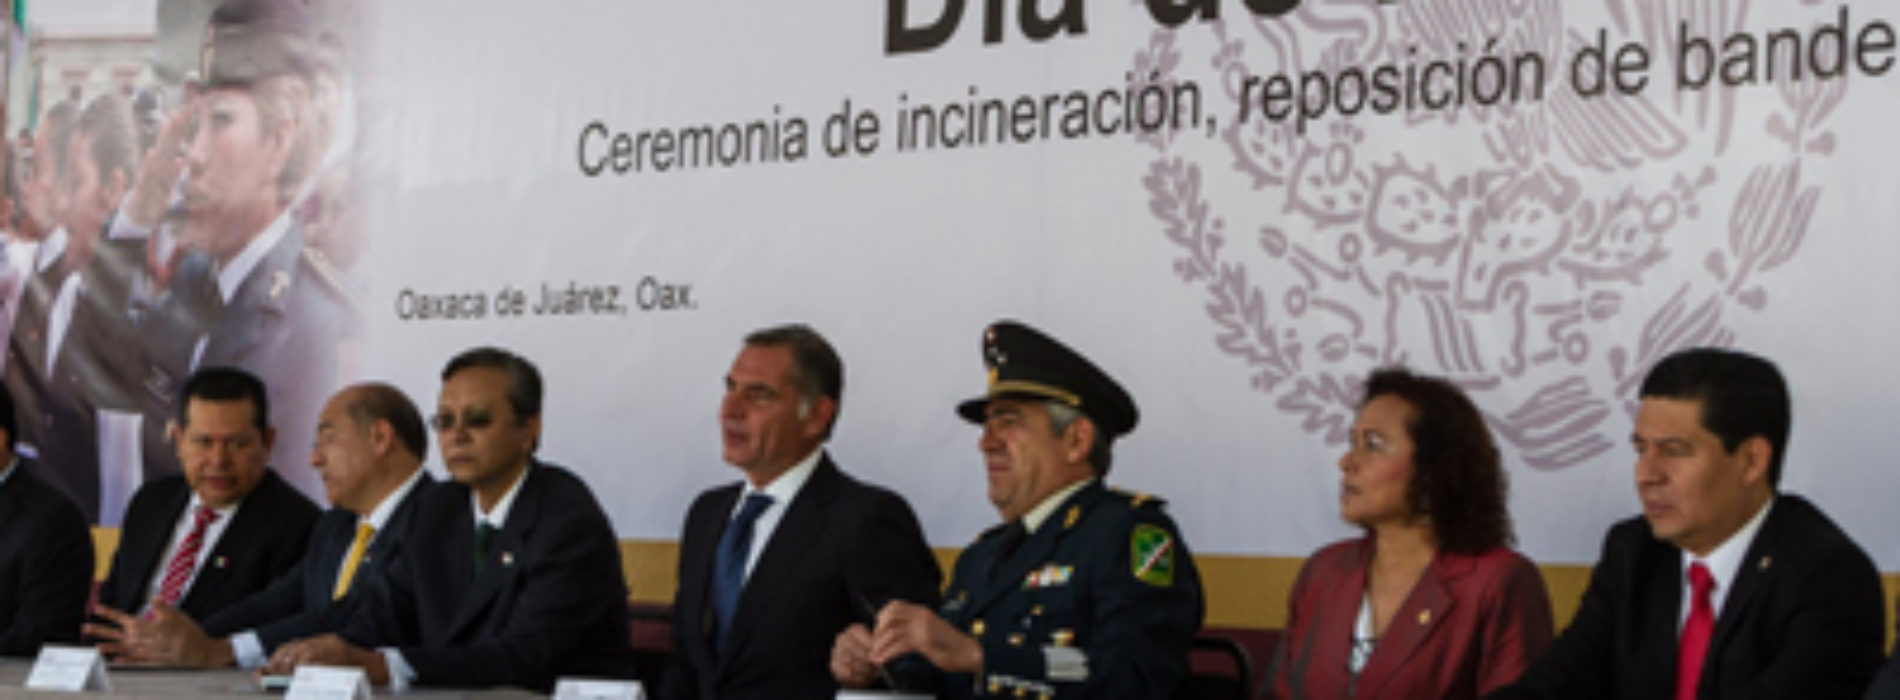 Exhorta Gobierno del Estado a honrar y fortalecer valores patrióticos para transformar Oaxaca